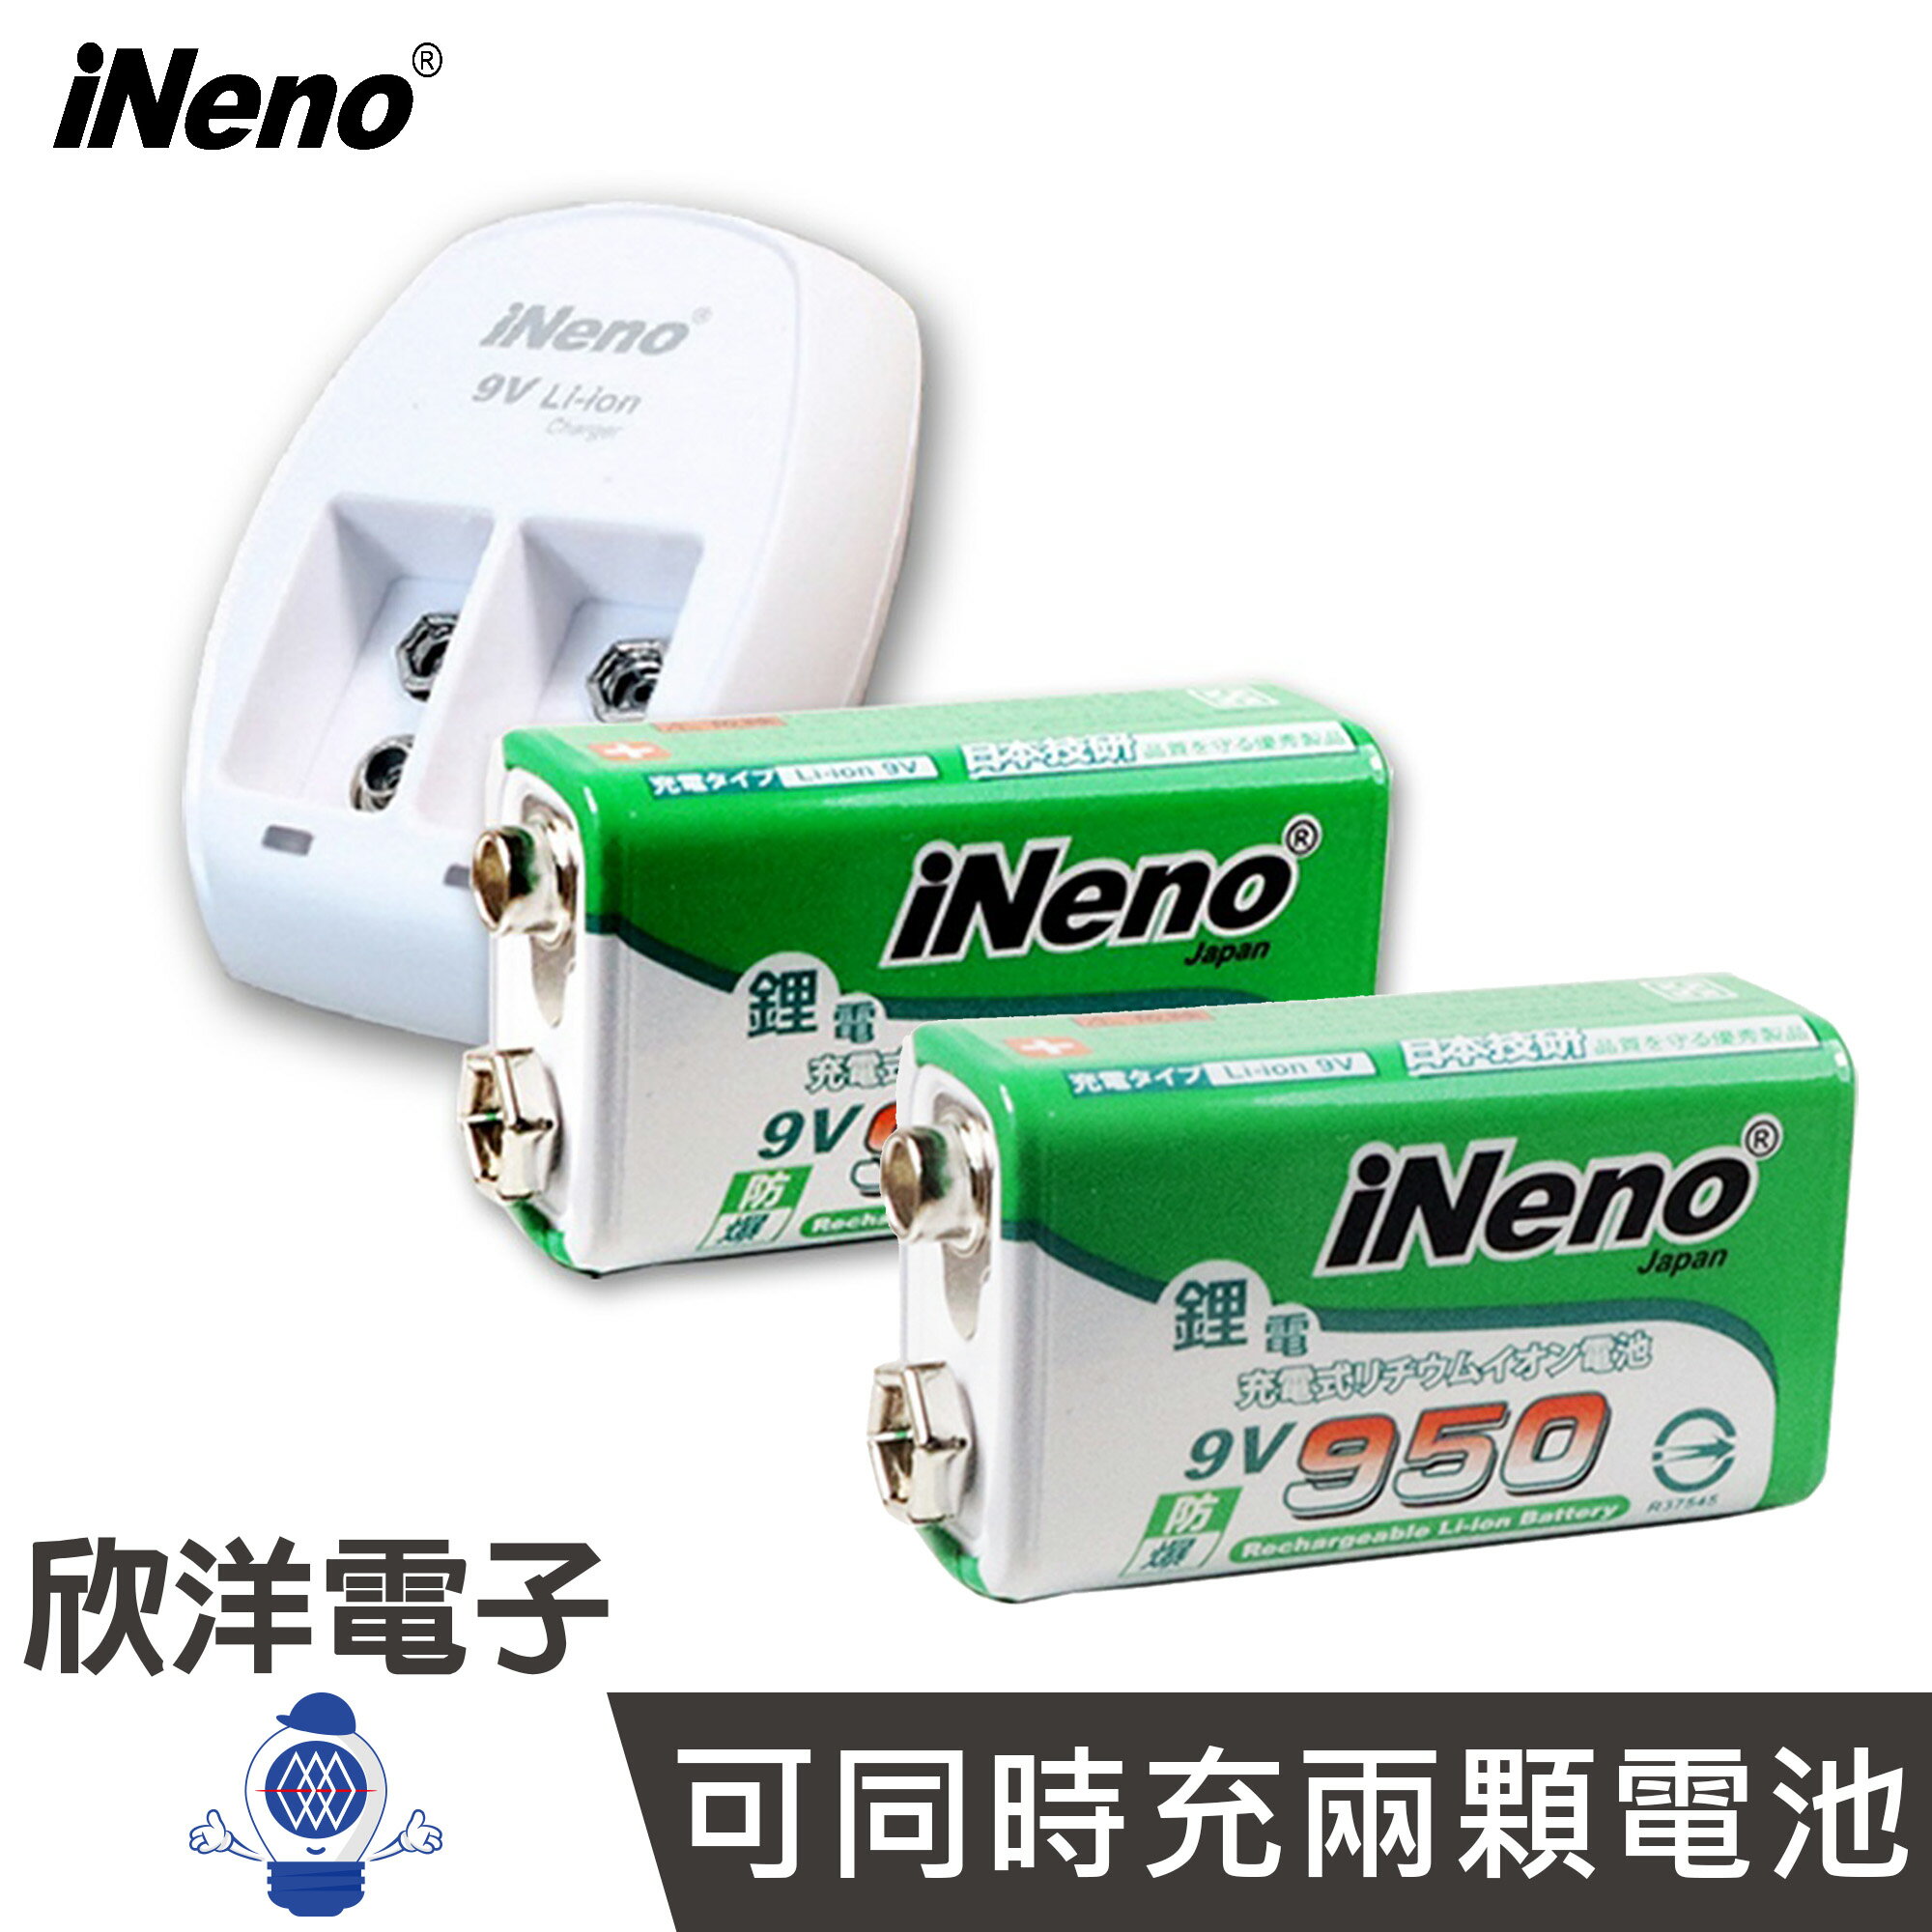 ※ 欣洋電子 ※ 日本iNeno 充電器 9V鋰電池充電器+高效能防爆角型可充式鋰電池組 高效能防爆角型可充式鋰電池 (9VLI) (9V-950)